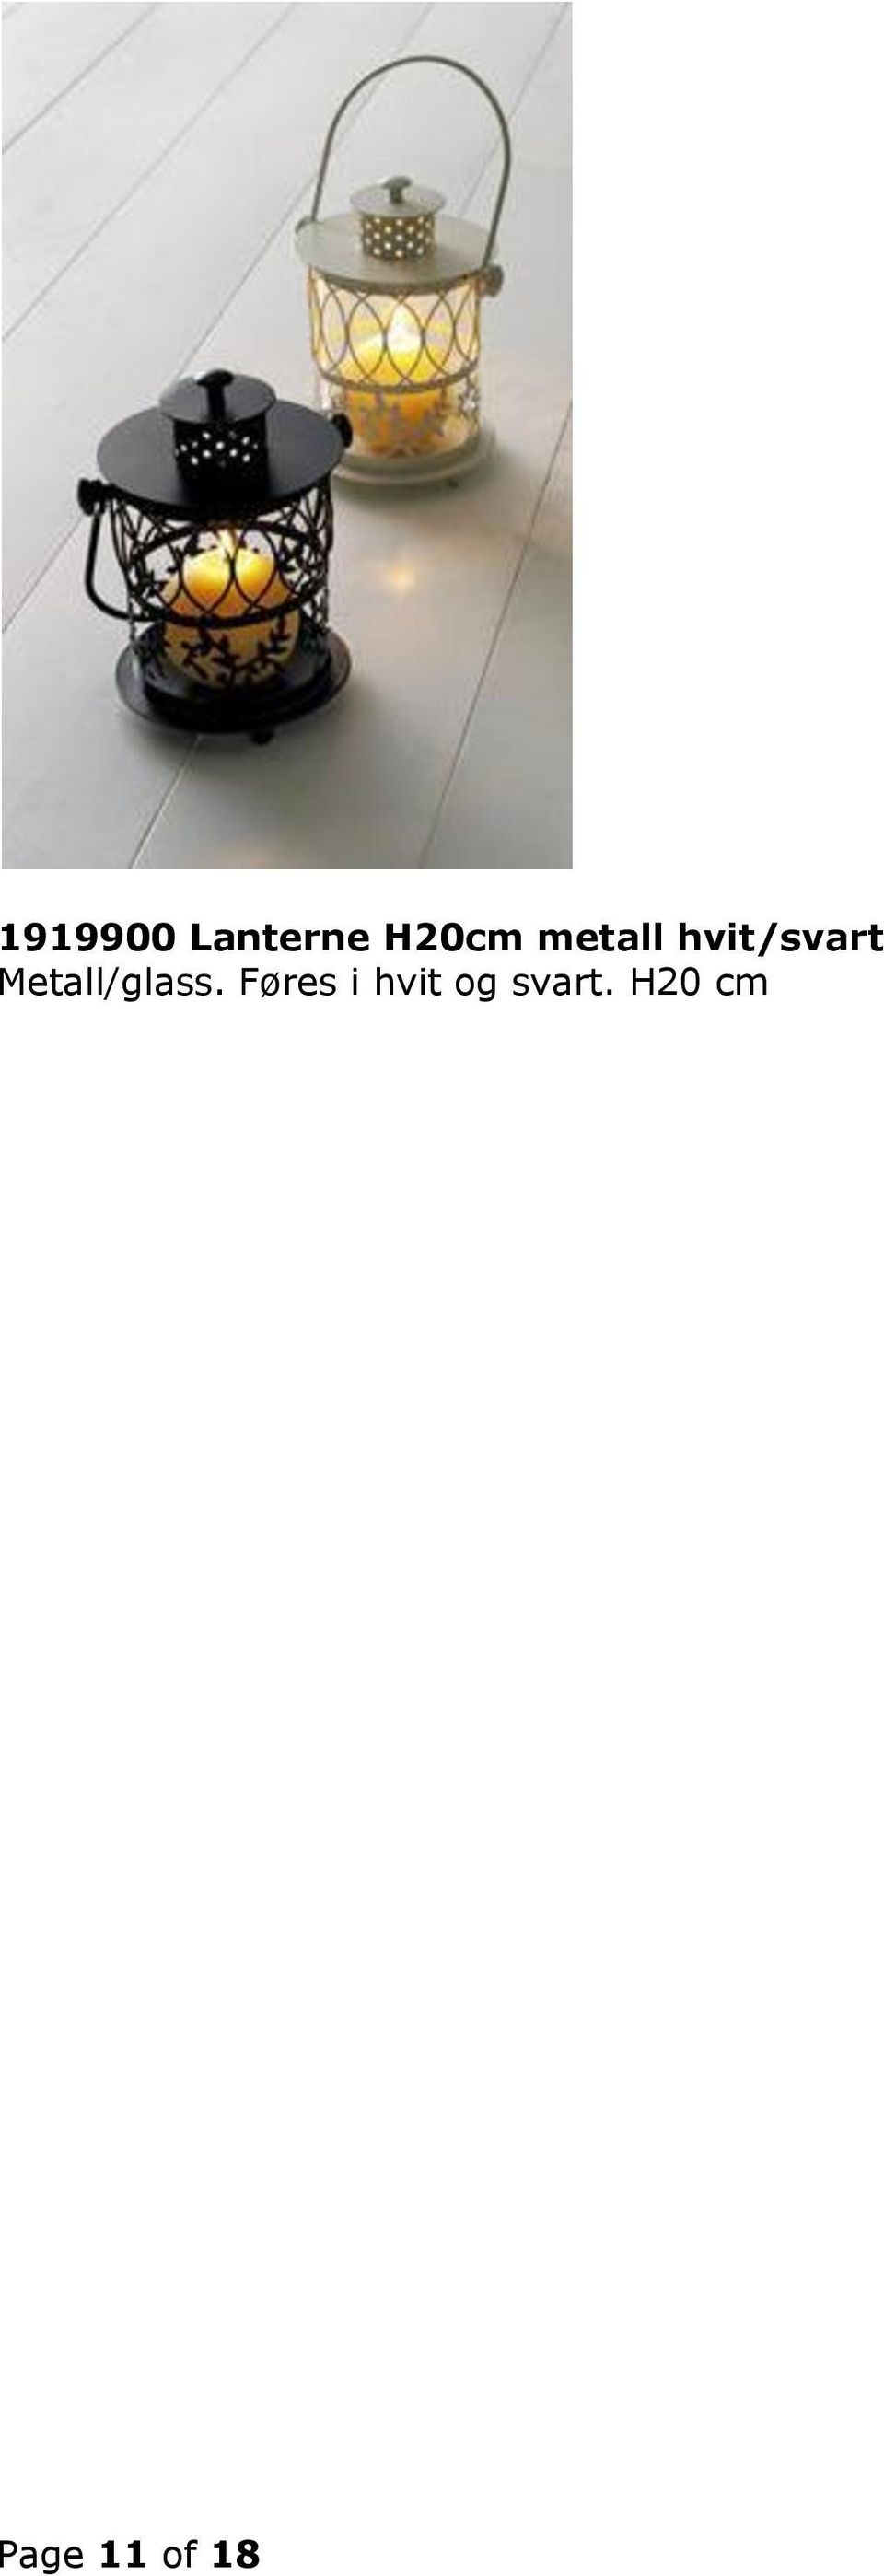 Metall/glass.